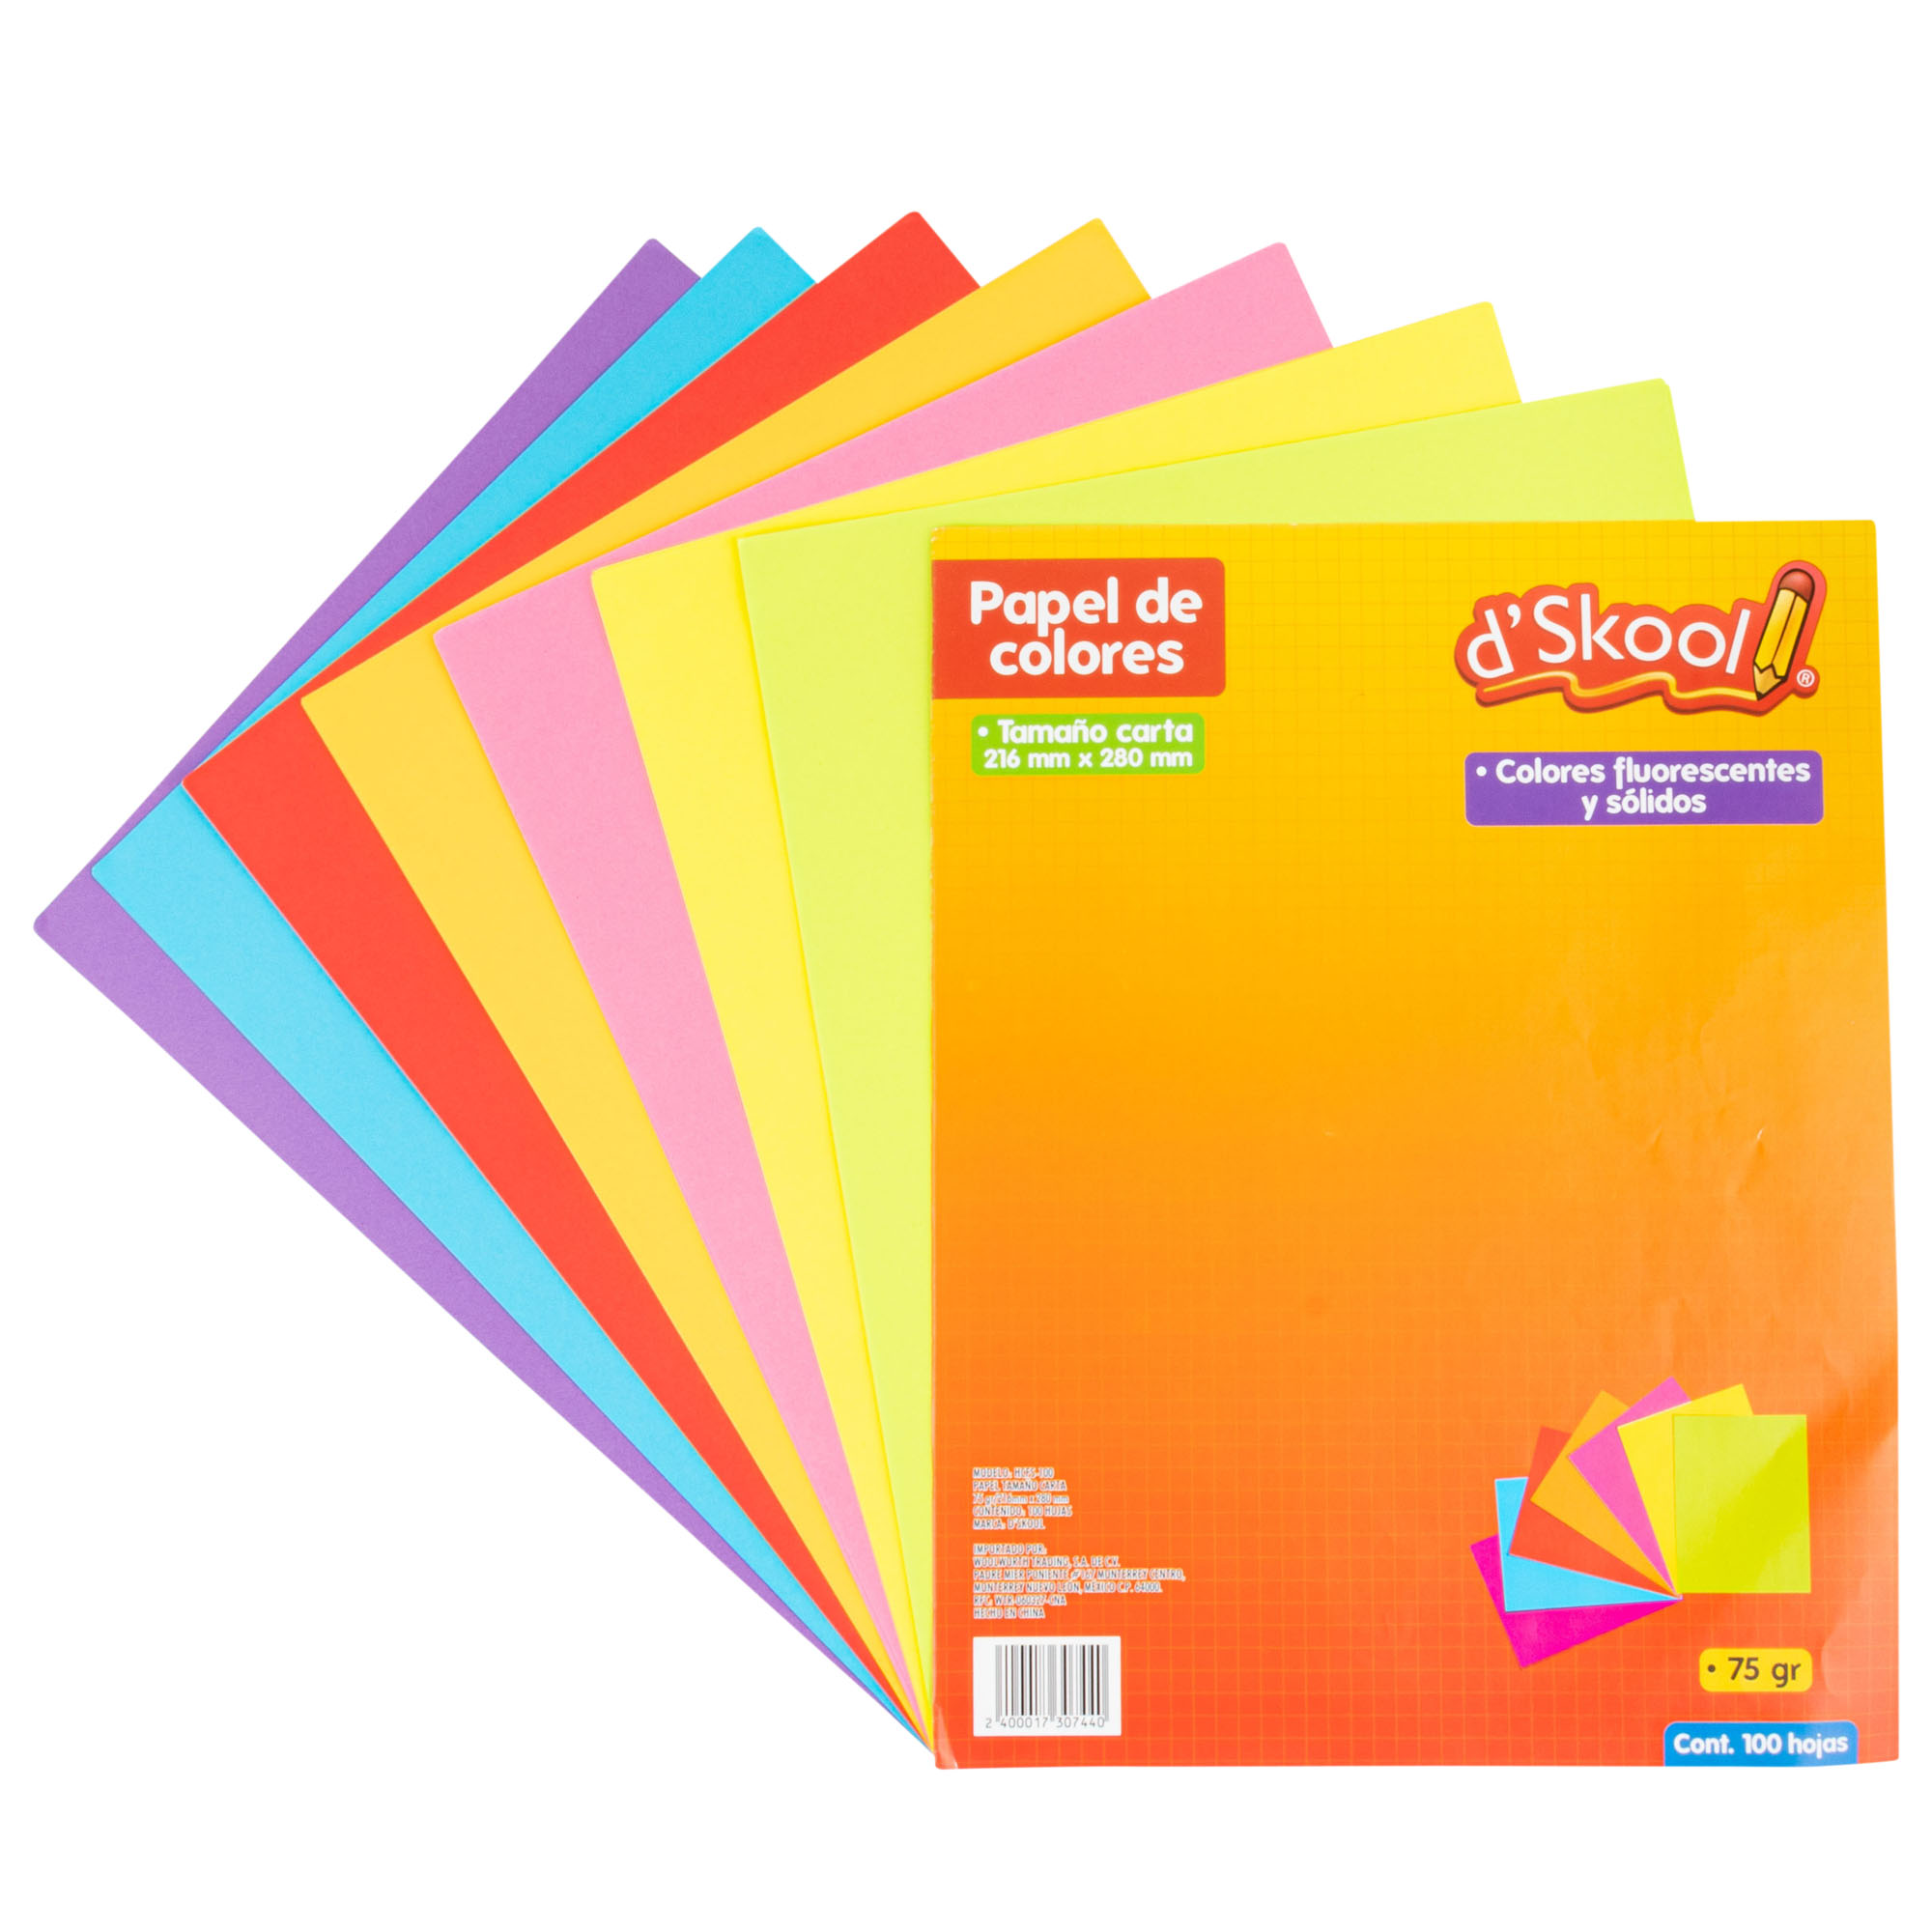 Platillo Milímetro Escarpado Hojas D'Skool Colores Fluorescentes y Sólidos Tamaño Carta 100 hojas |  DelSol